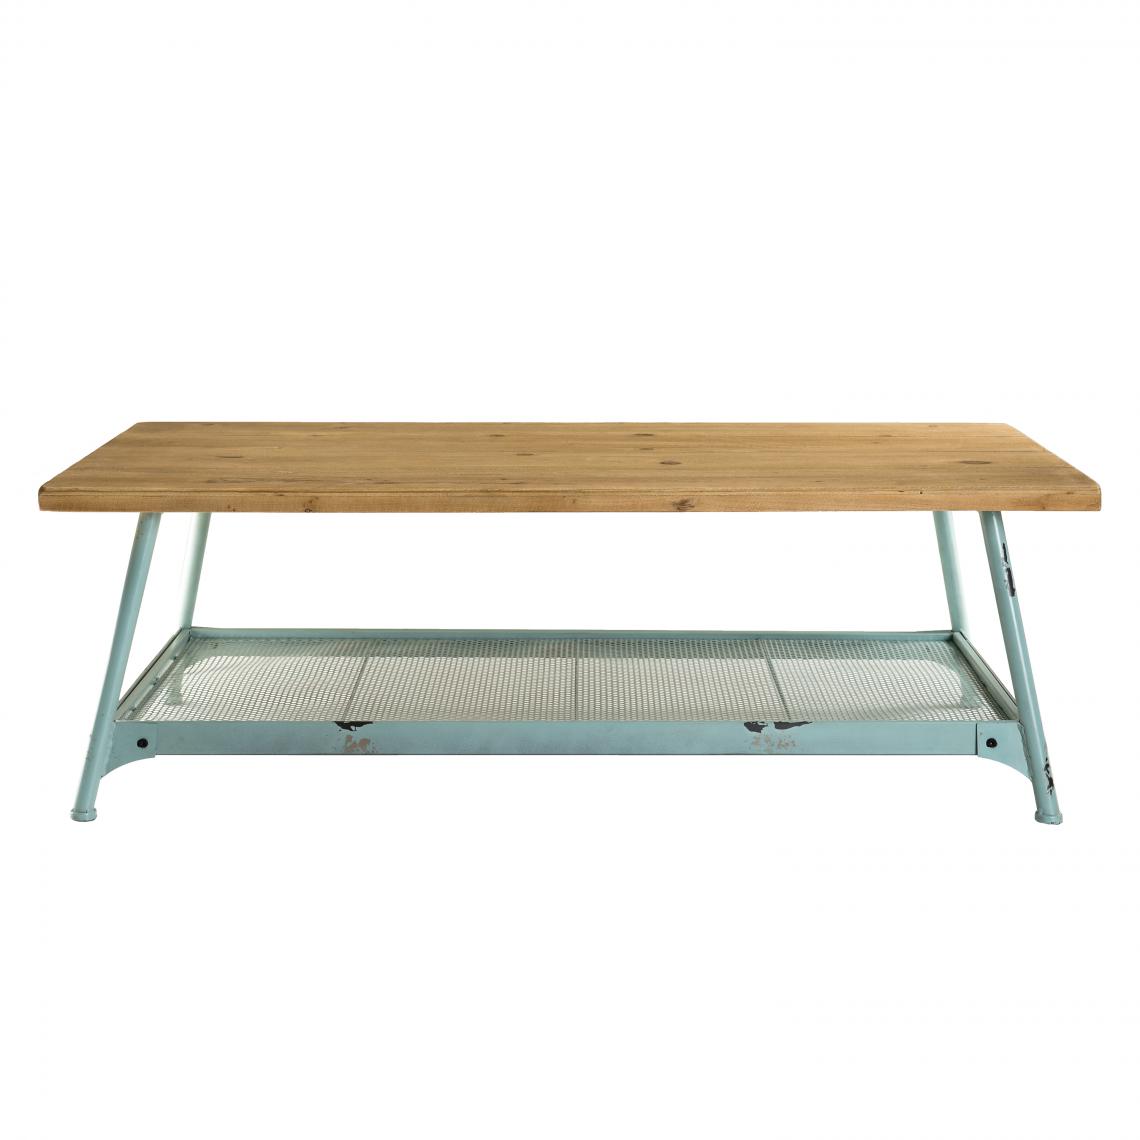 MACABANE - Table basse scandinave plateau en Sapin et pieds métal bleu - ELYNA - Tables basses